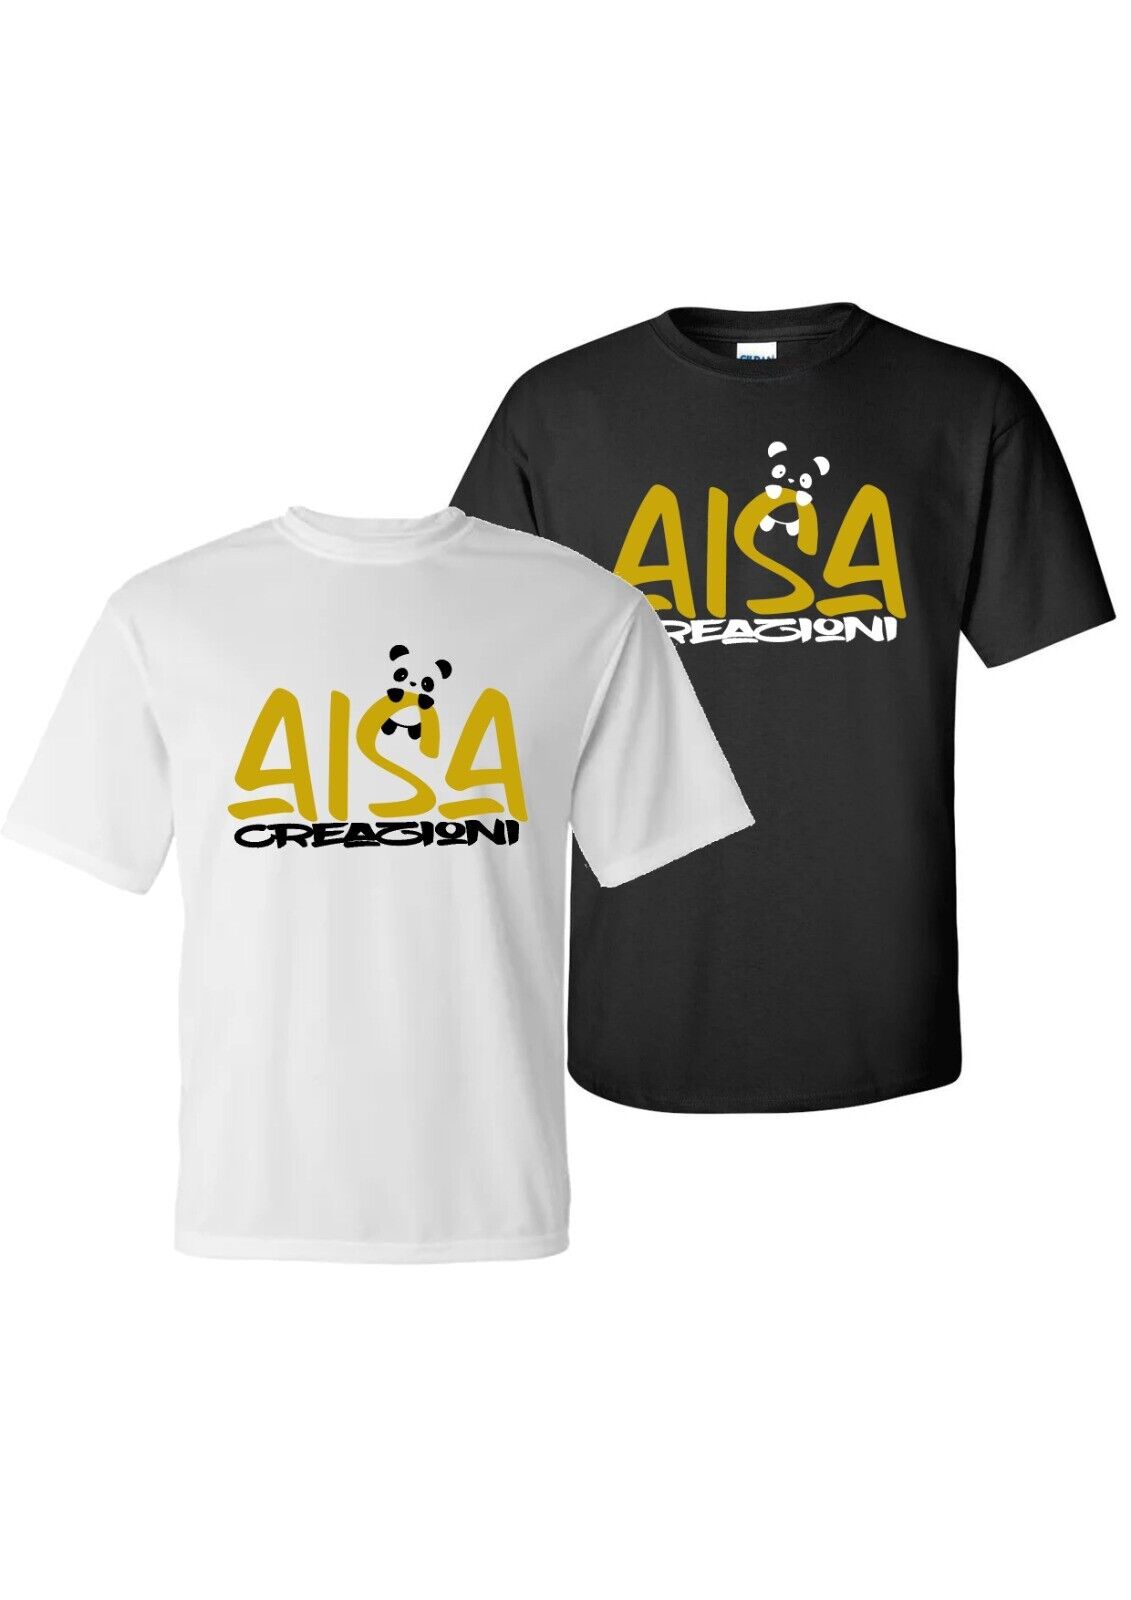 NEU bei All Of Printing, AISA Creazioni T-Shirt Für Dich Oder Deine Lieblinge